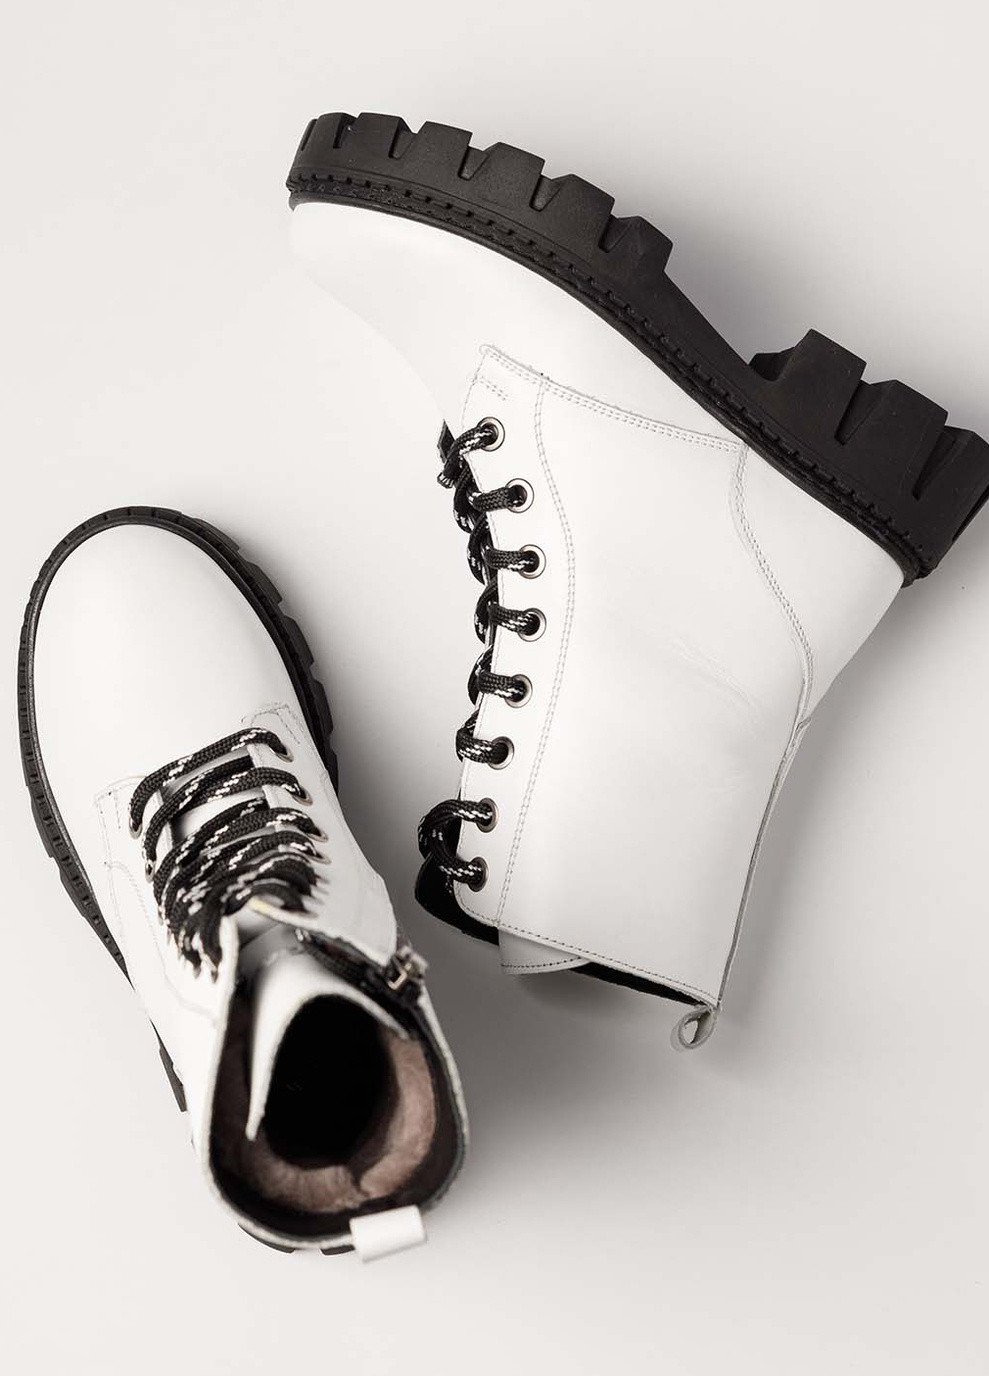 Белые кэжуал ботинки зимние из натуральной кожи на девочку 8549 37 23.5см белый 63255 Tutubi